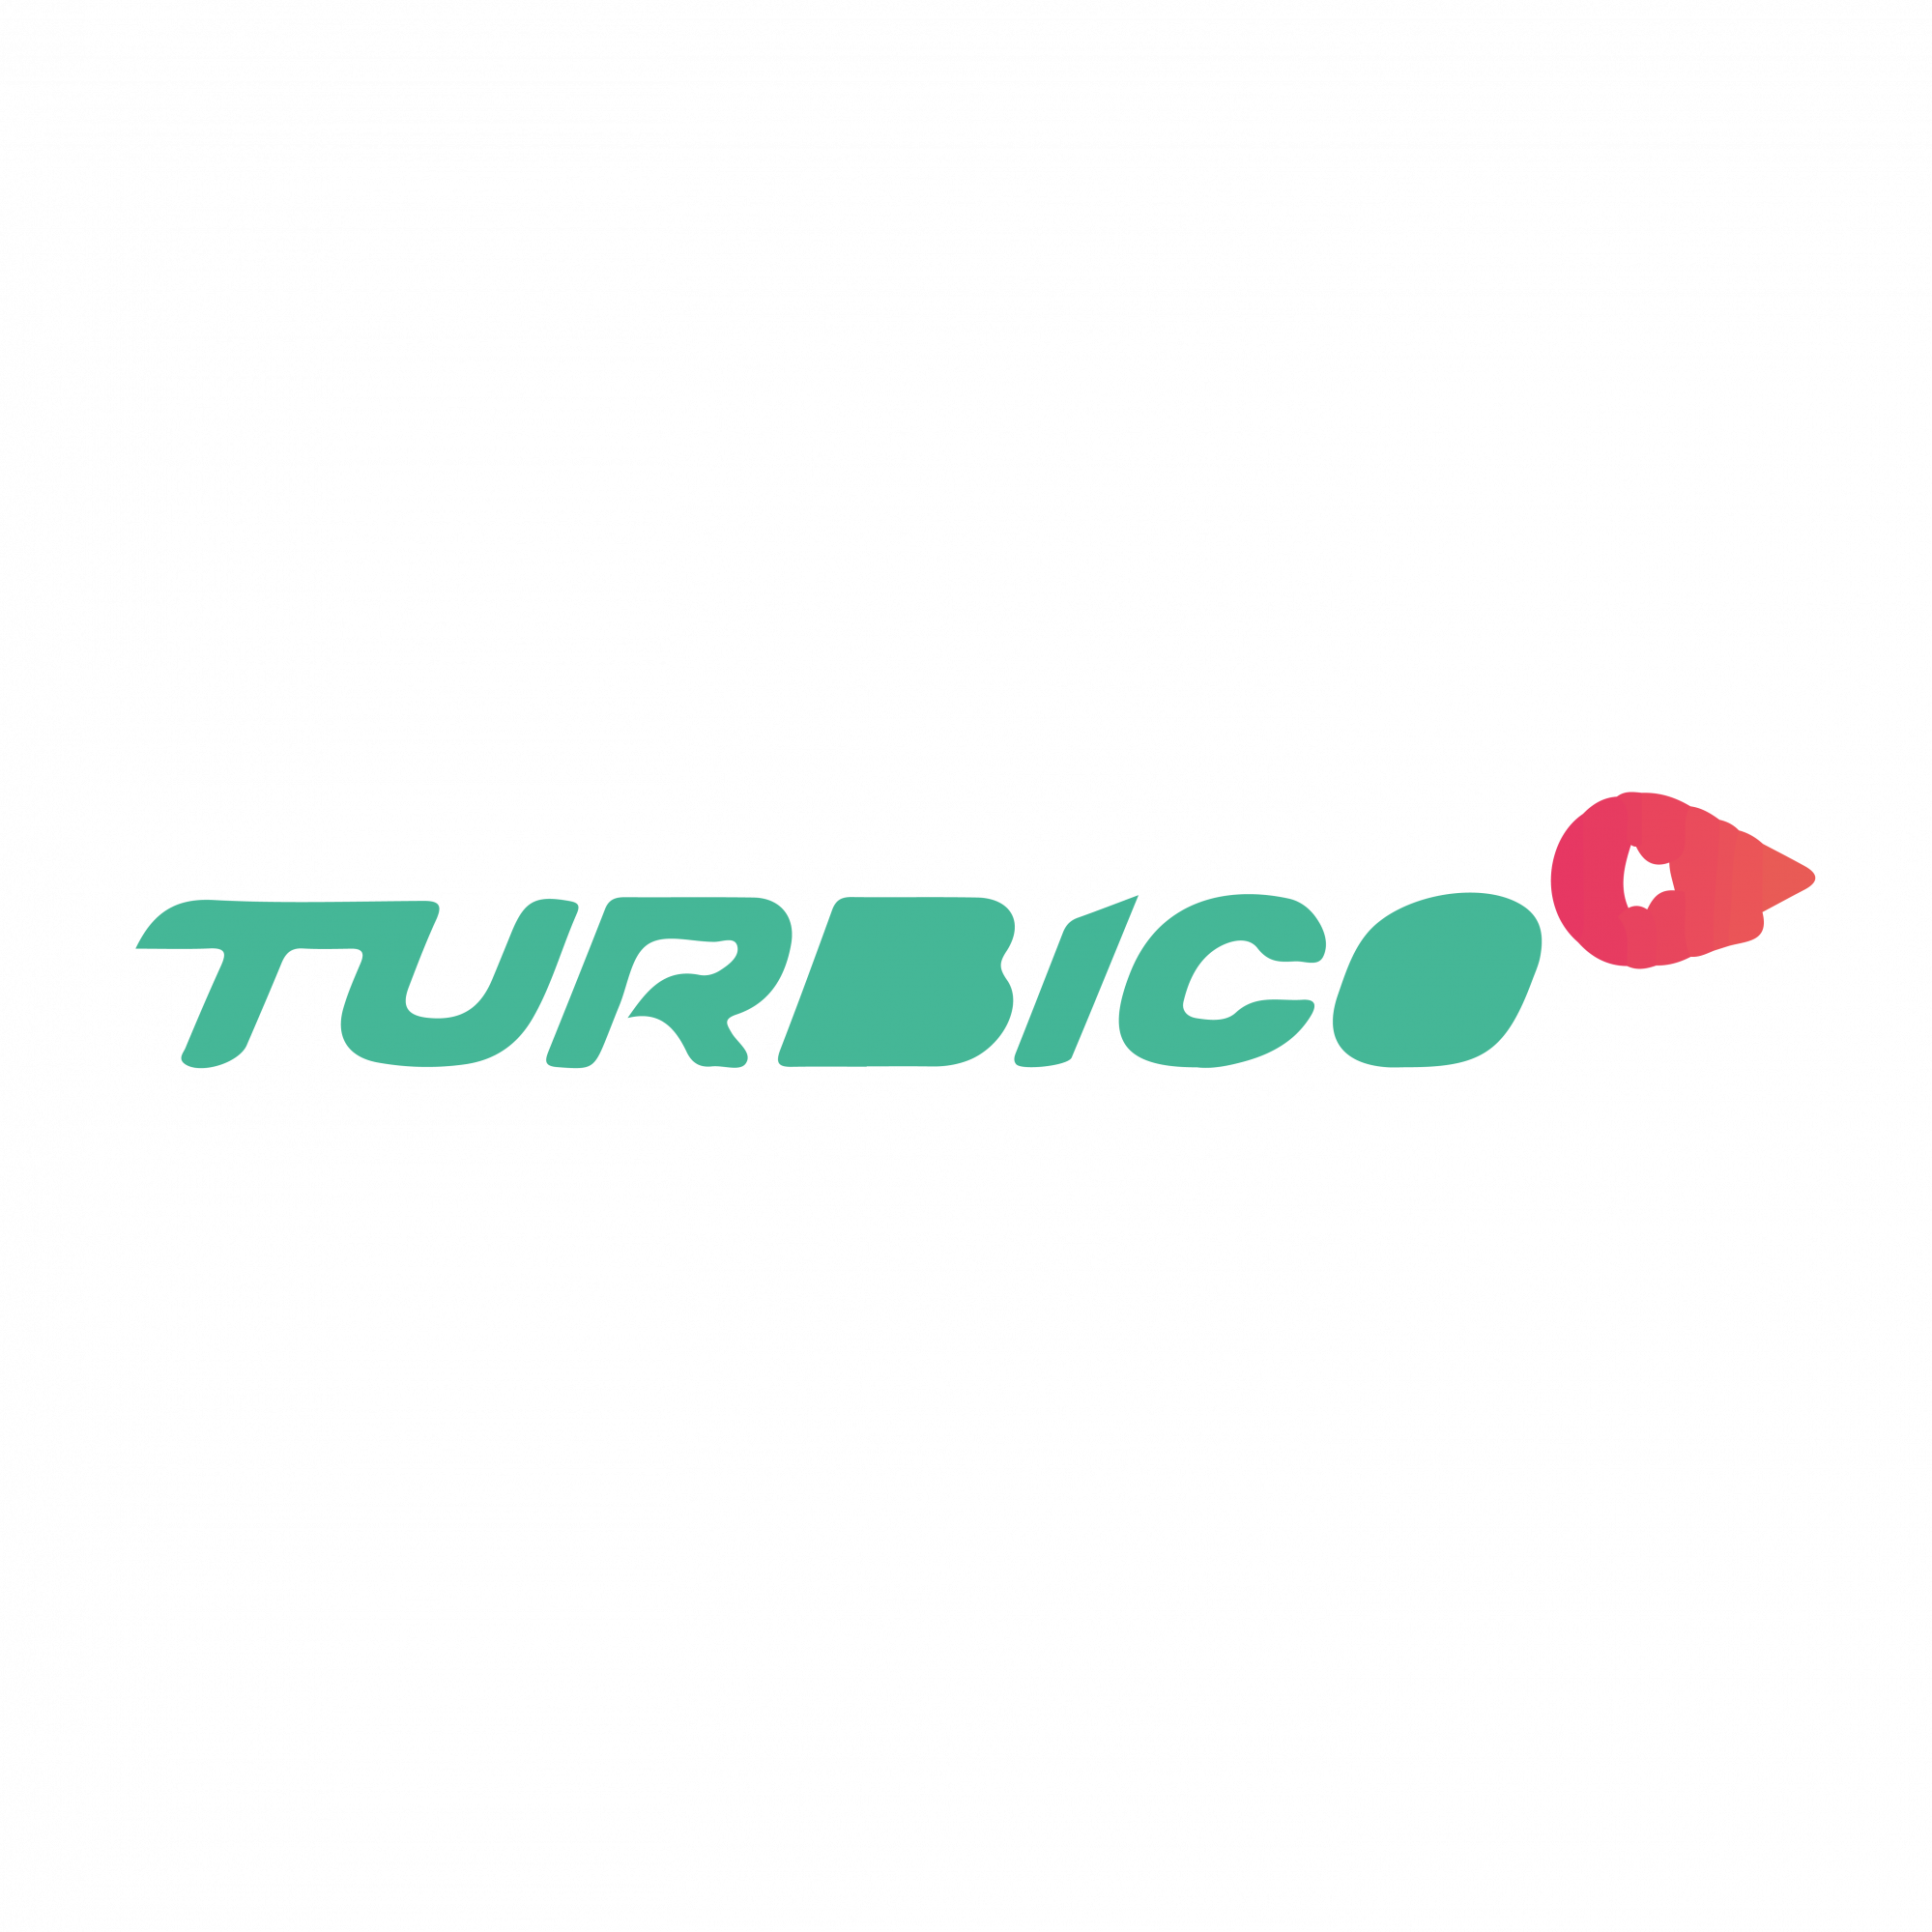 Turbico Casino